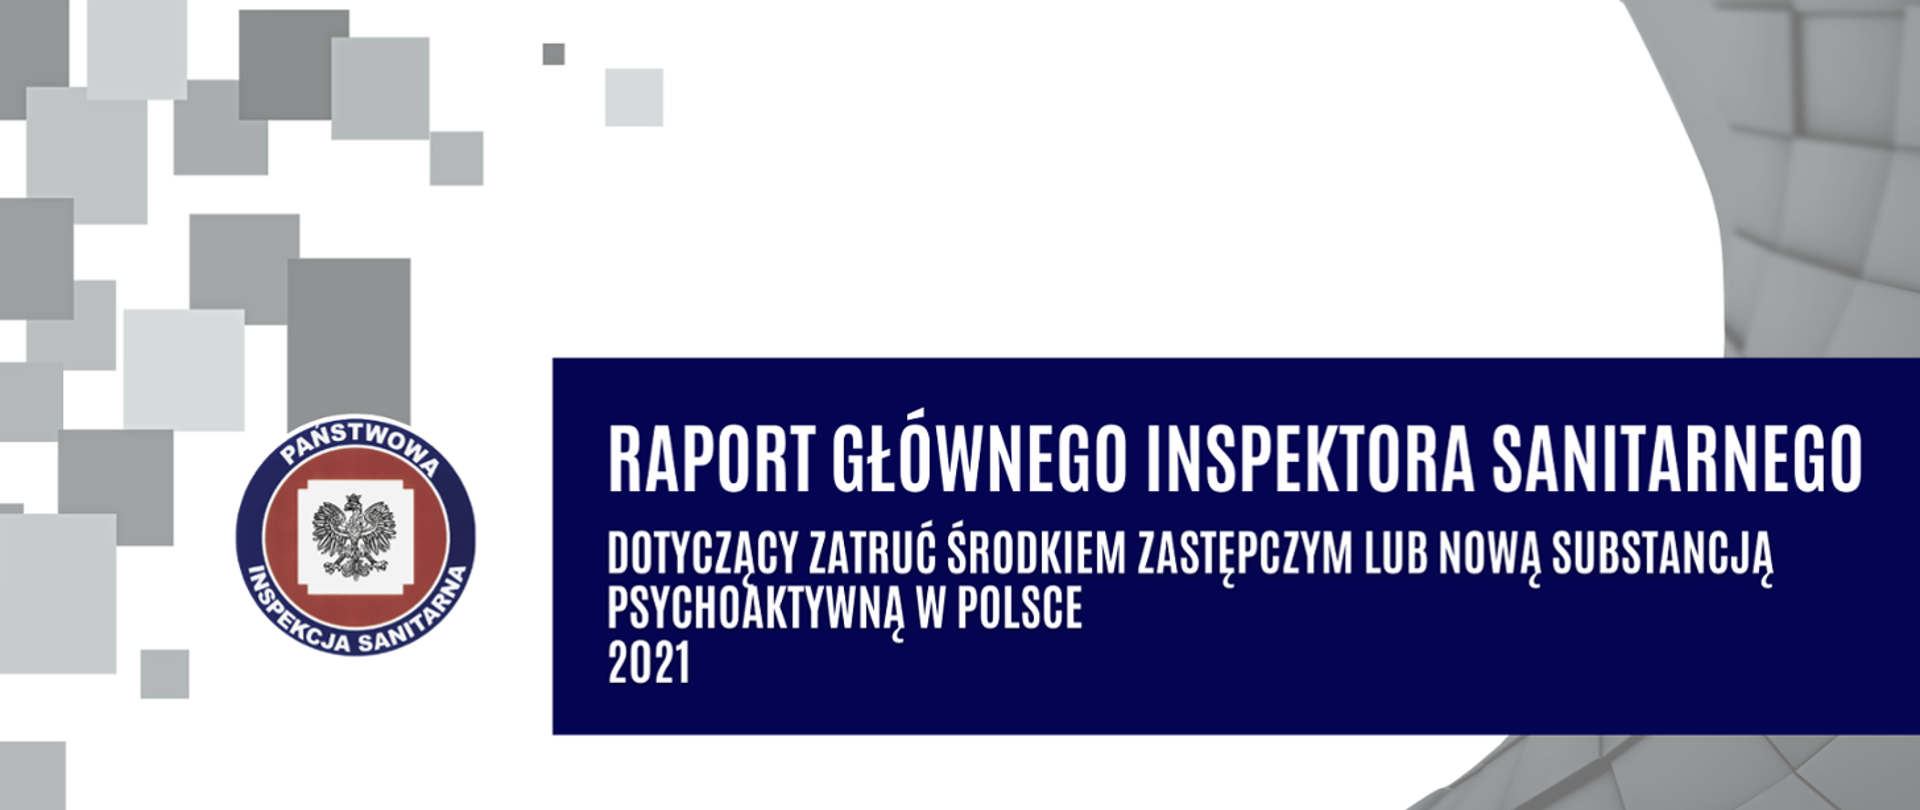 Raport dotyczący zatruć środkiem zastępczym lub nową substancją psychoaktywną za 2021 rok